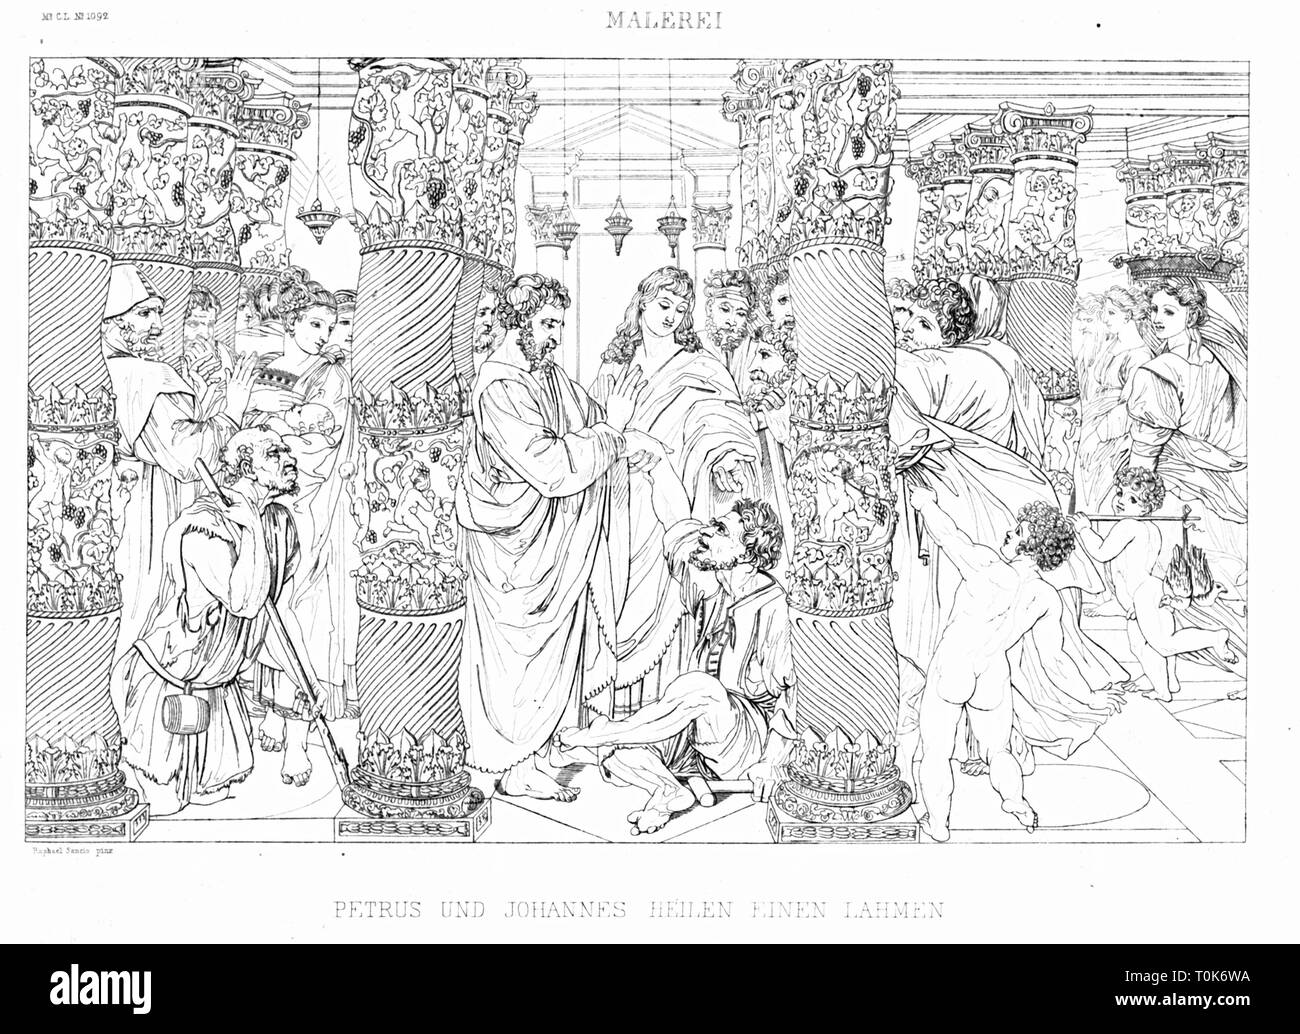 Religion, biblische Szenen", die Heilung des Gelähmten", Stahlstich, 19. Jahrhundert, nach einem Gemälde von Raffaello Sanzio (Raphael), ca. 1516, Additional-Rights - Clearance-Info - Not-Available Stockfoto